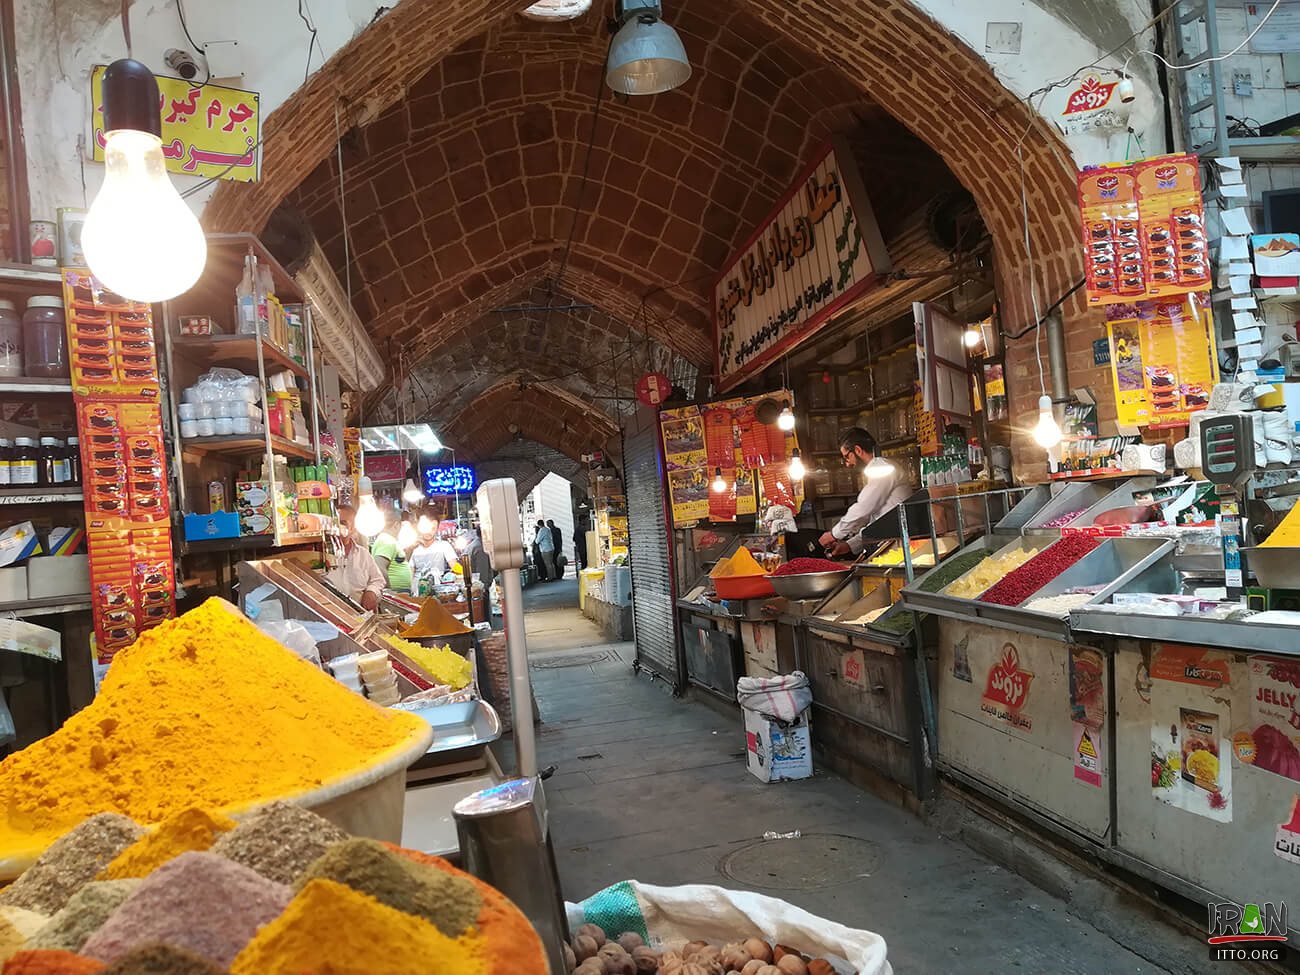 Sanandaj bazaar,Aasef bazaar,Grand Bazaar Of Sanandaj,Sanandaj Old Bazaar,بازار سنندج,بازار آصف,بازار عاصف,کردستان,kordestan,sanandaj,kurdestan,kurdistan,sanandaj grand bazaar,بازار بزرگ سنندج,بازار سنتی سنندج,sanandaj traditional bazaar,sanandaj old bazaar,عطاری